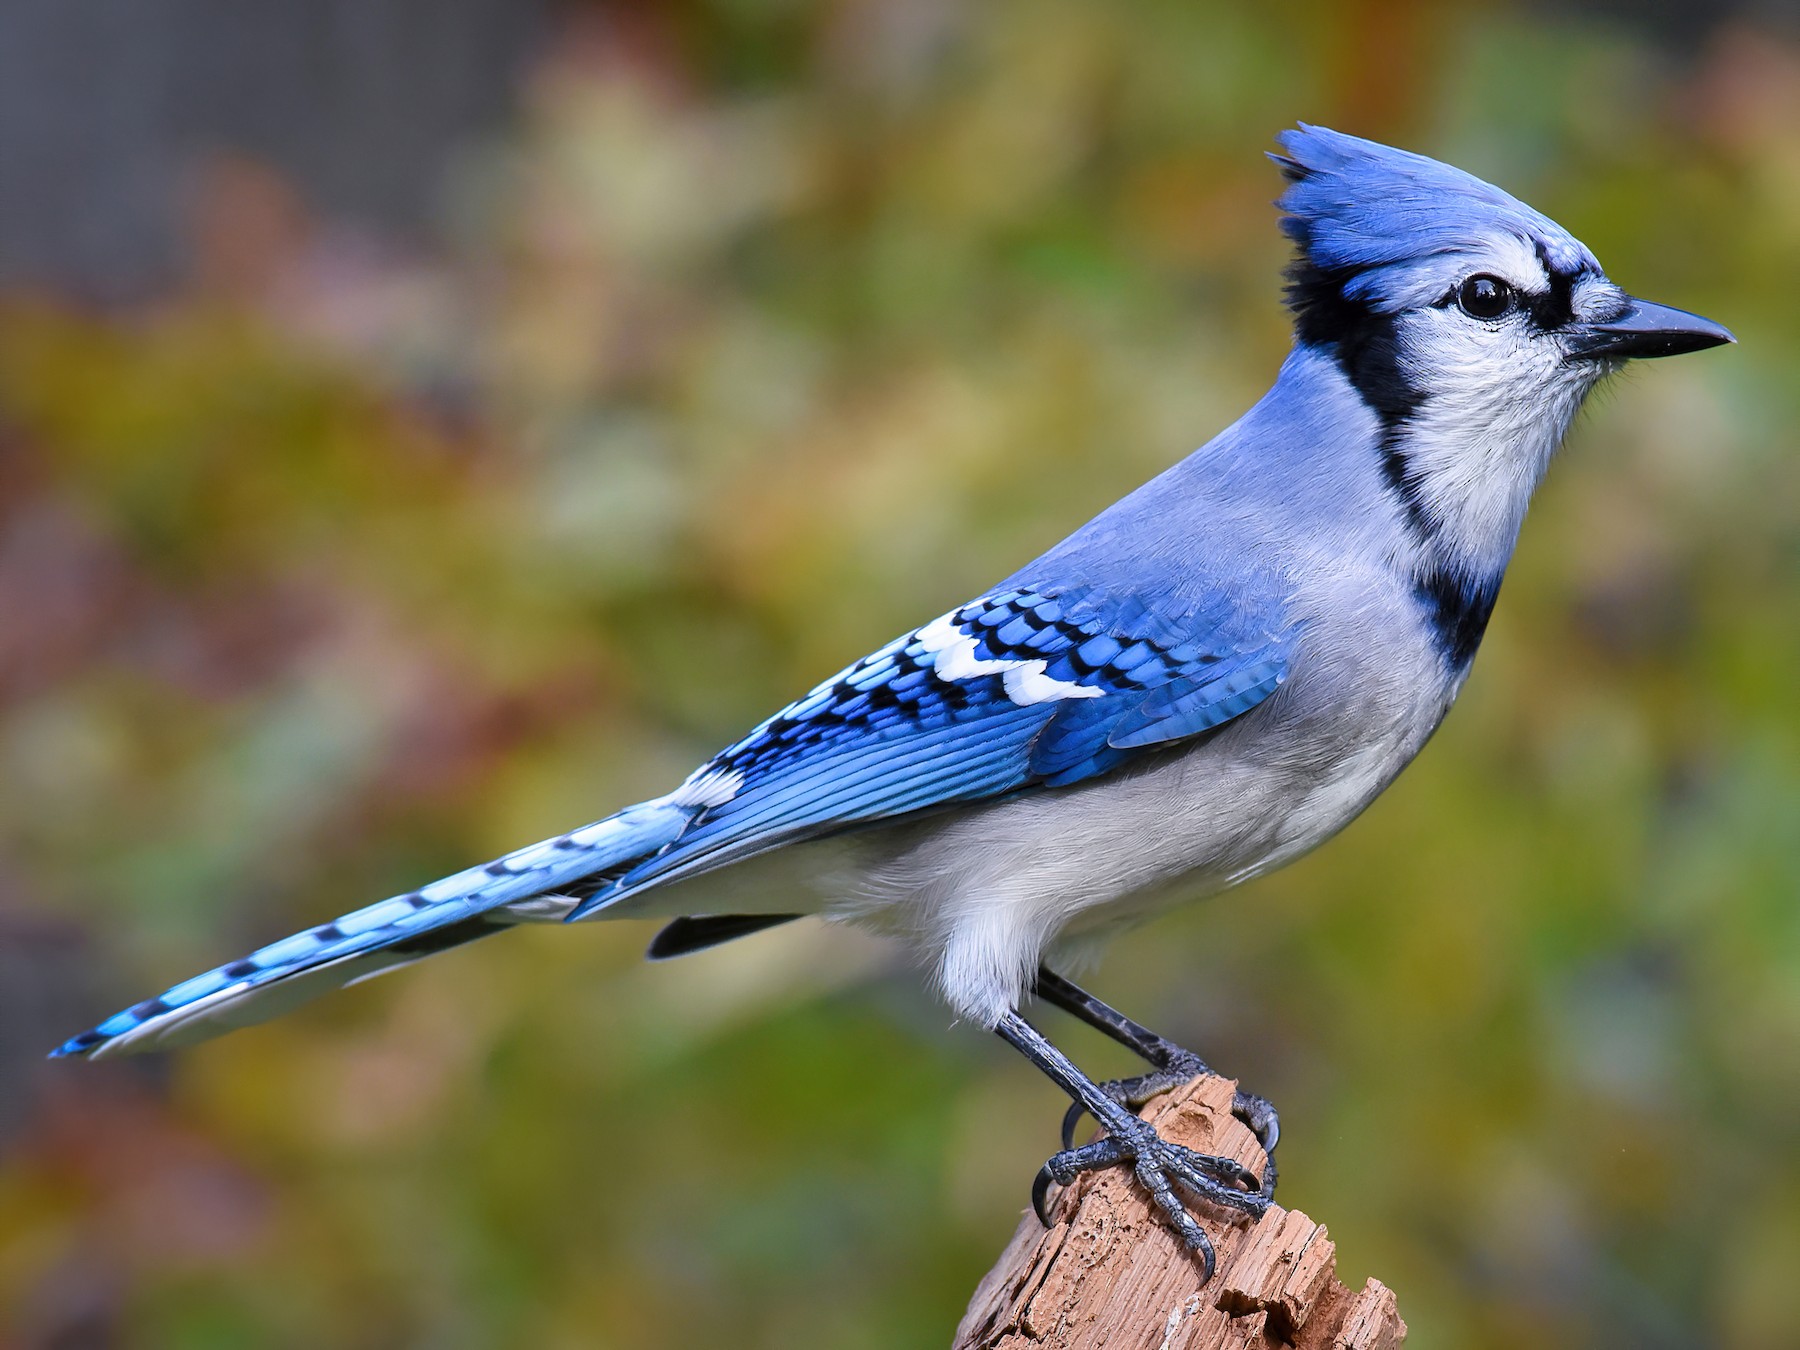 A Blue Jay bird sitting on a wood